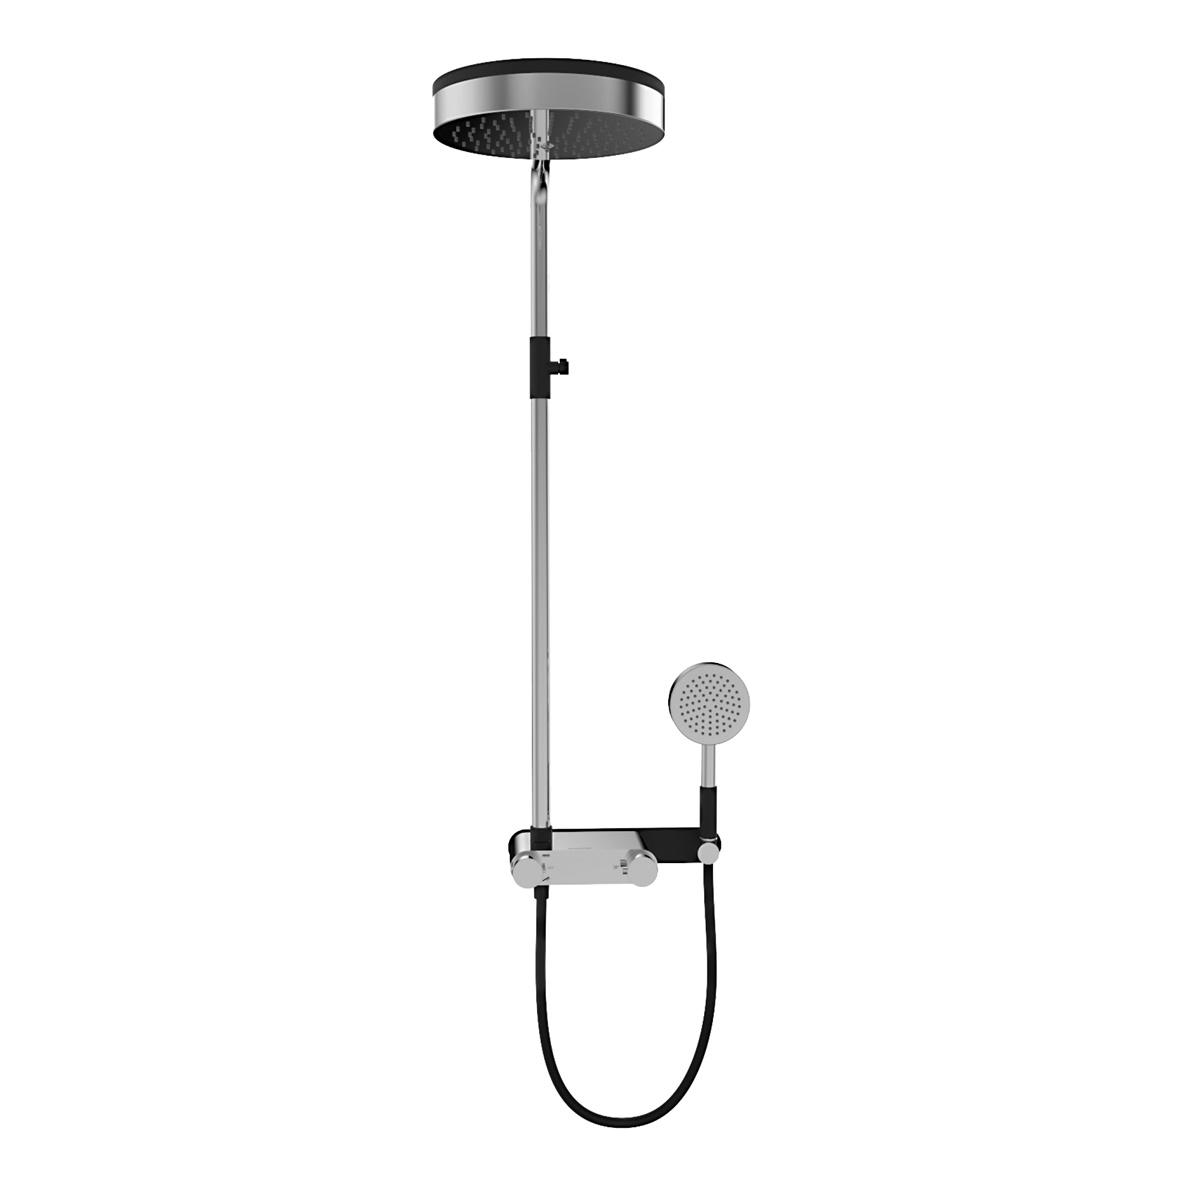 Cột sen tắm cao cấp YS34206, cột sen tắm mưa có vòi chỉnh nhiệt, có thể điều chỉnh độ cao;